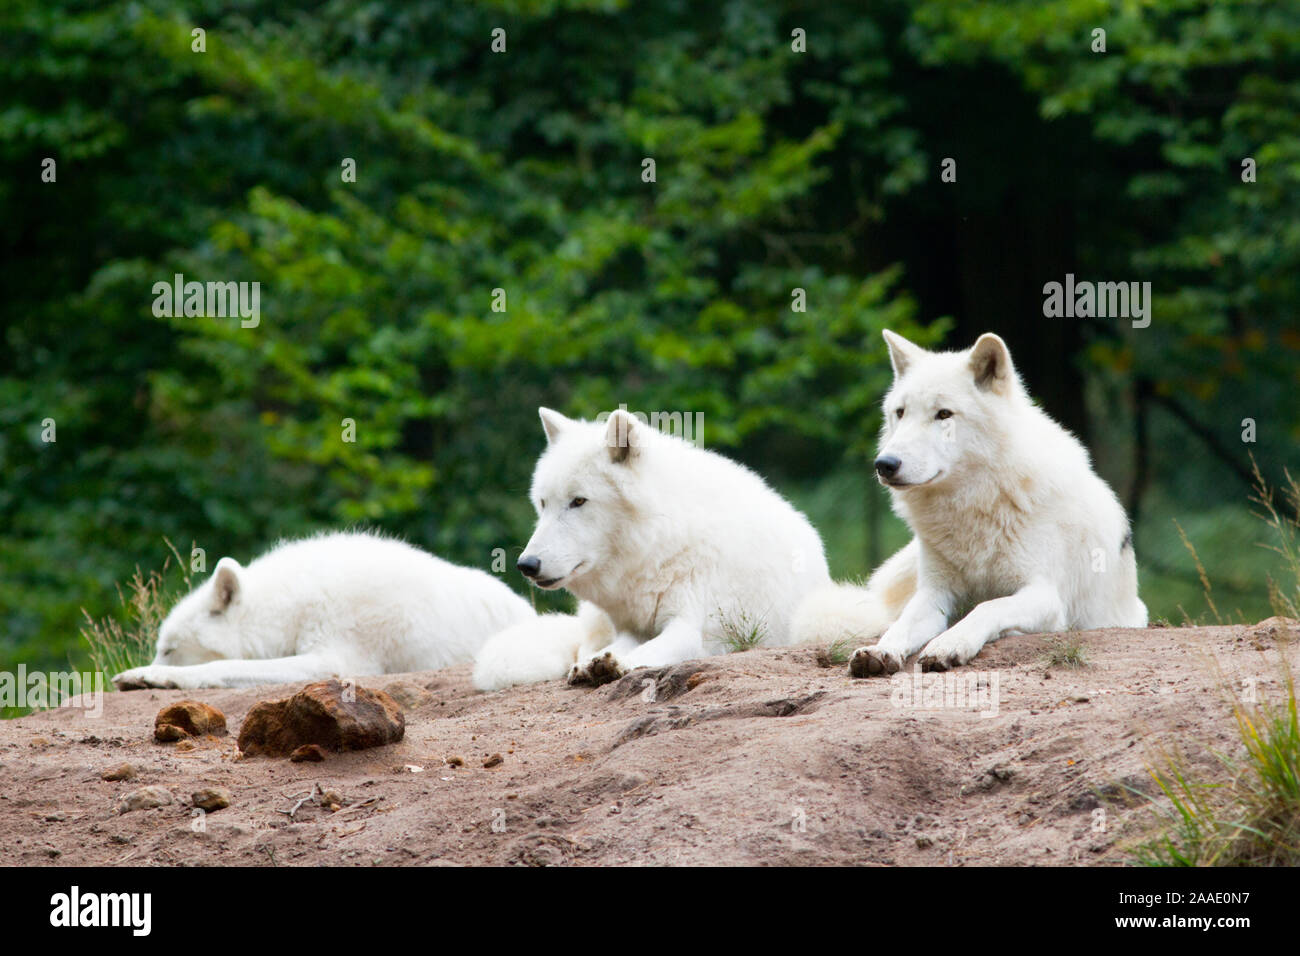 Tundrawölfe,Canis lupus albus, bei Veröffentlichung angeben: Wildpark Alte Fasanerie Klein-Auheim Stock Photo